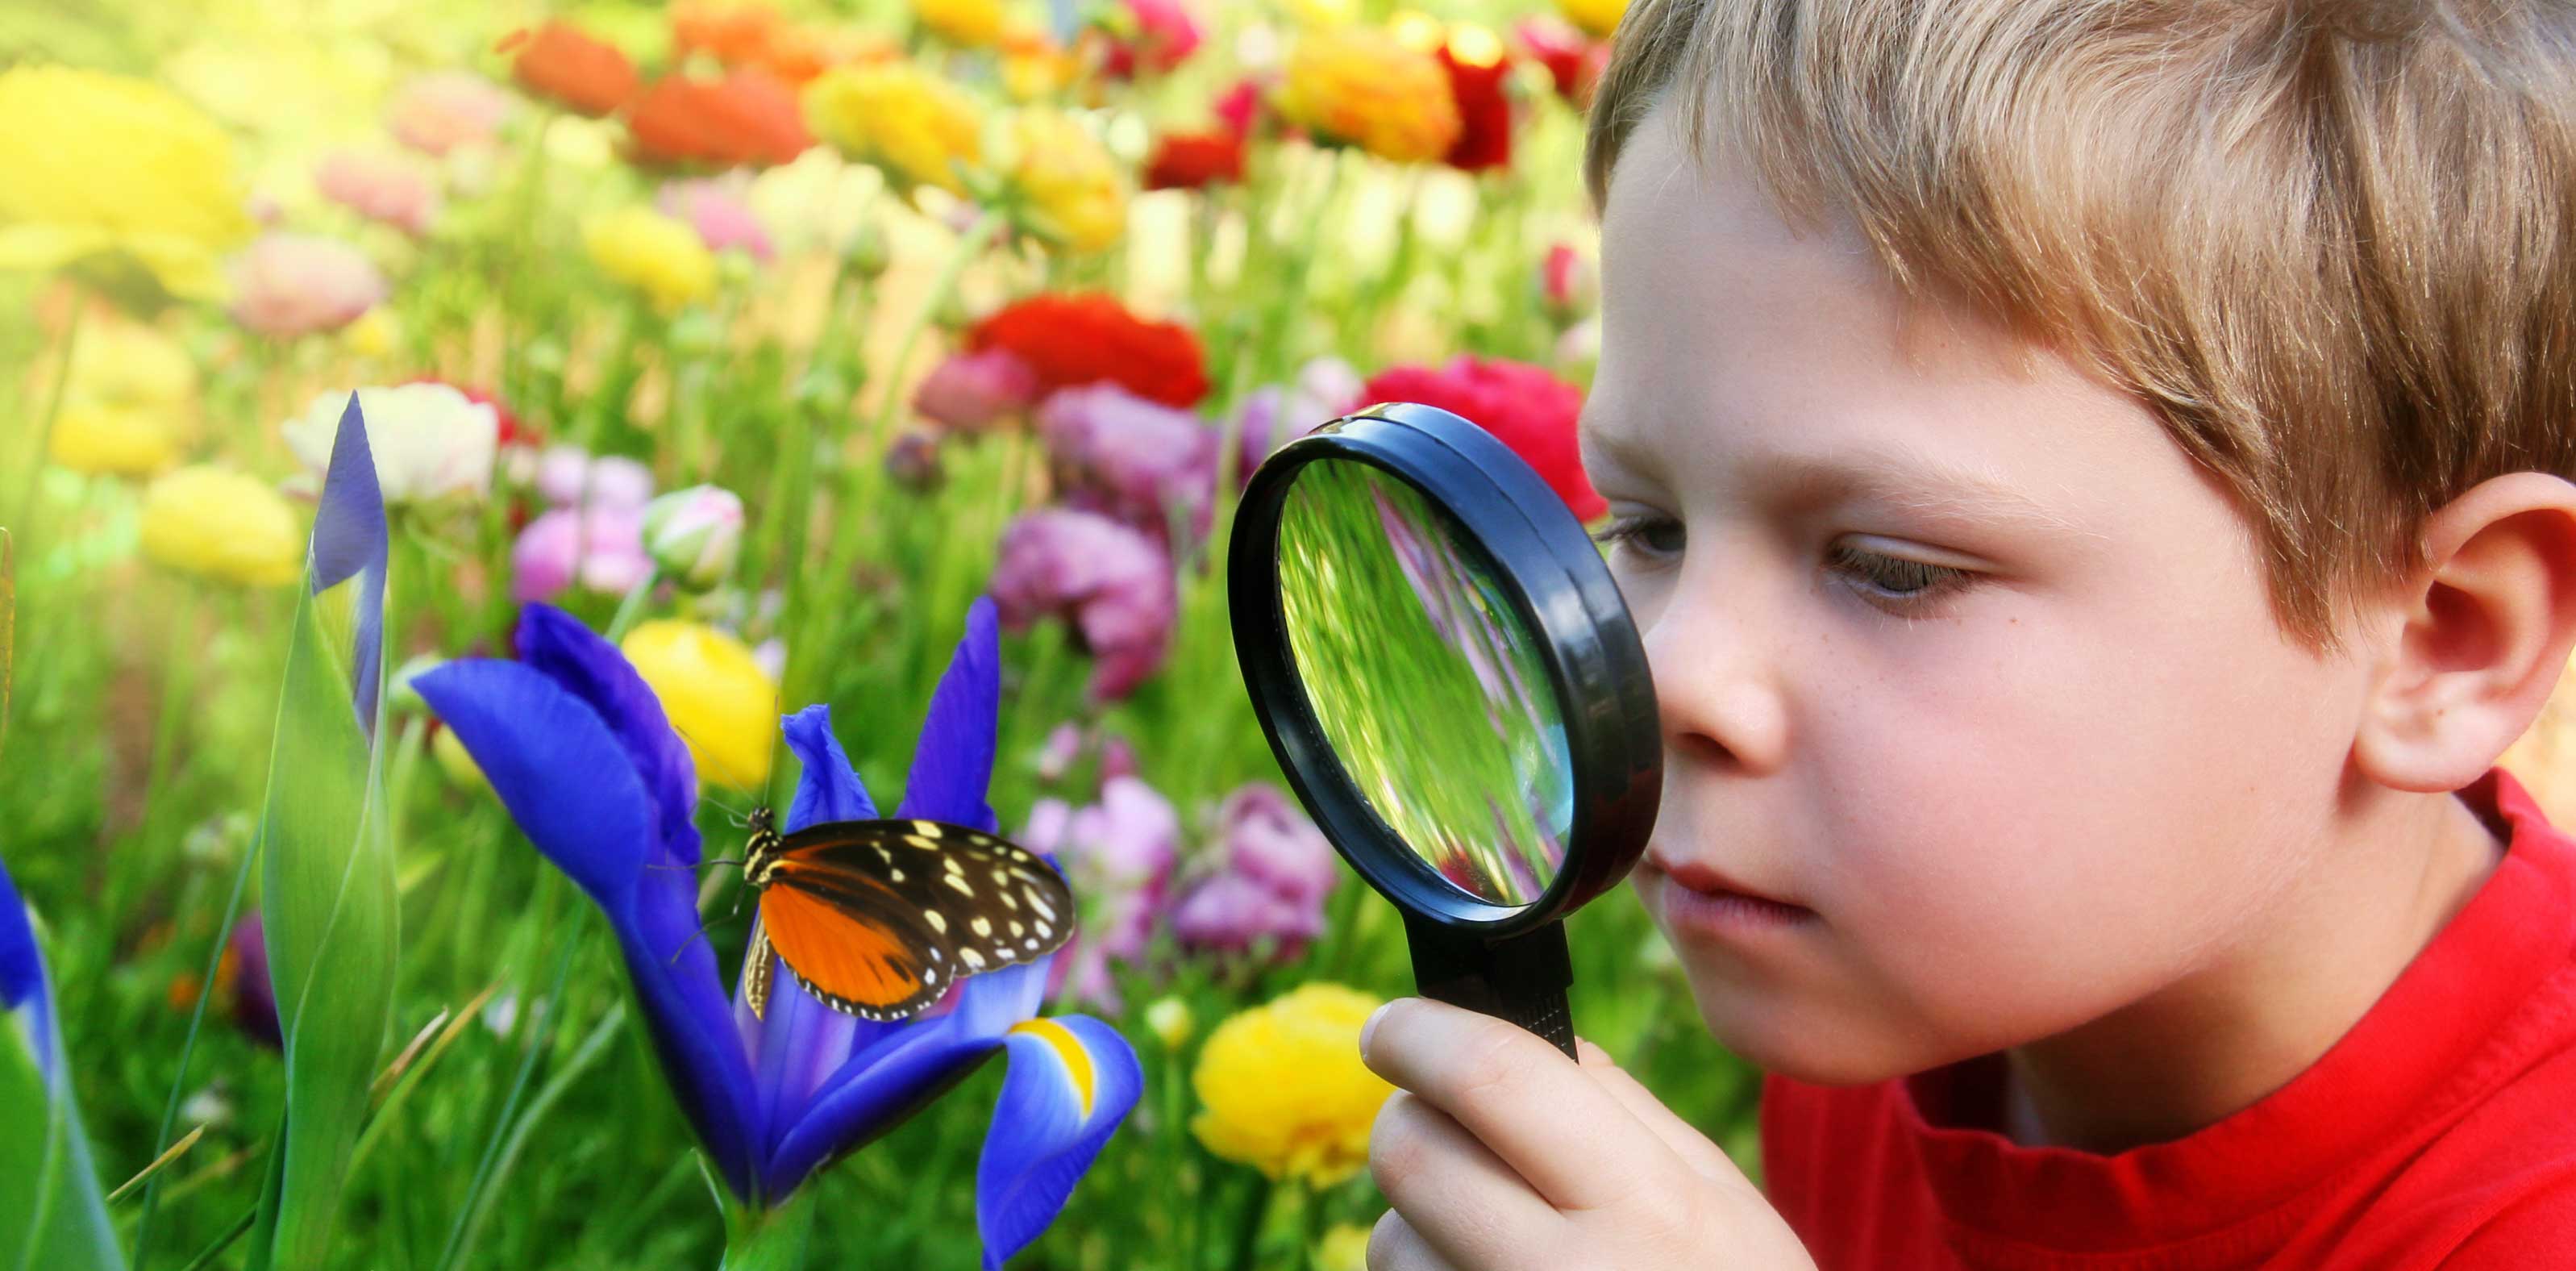 Наблюдение - основной метод ознакомления детей с природой.